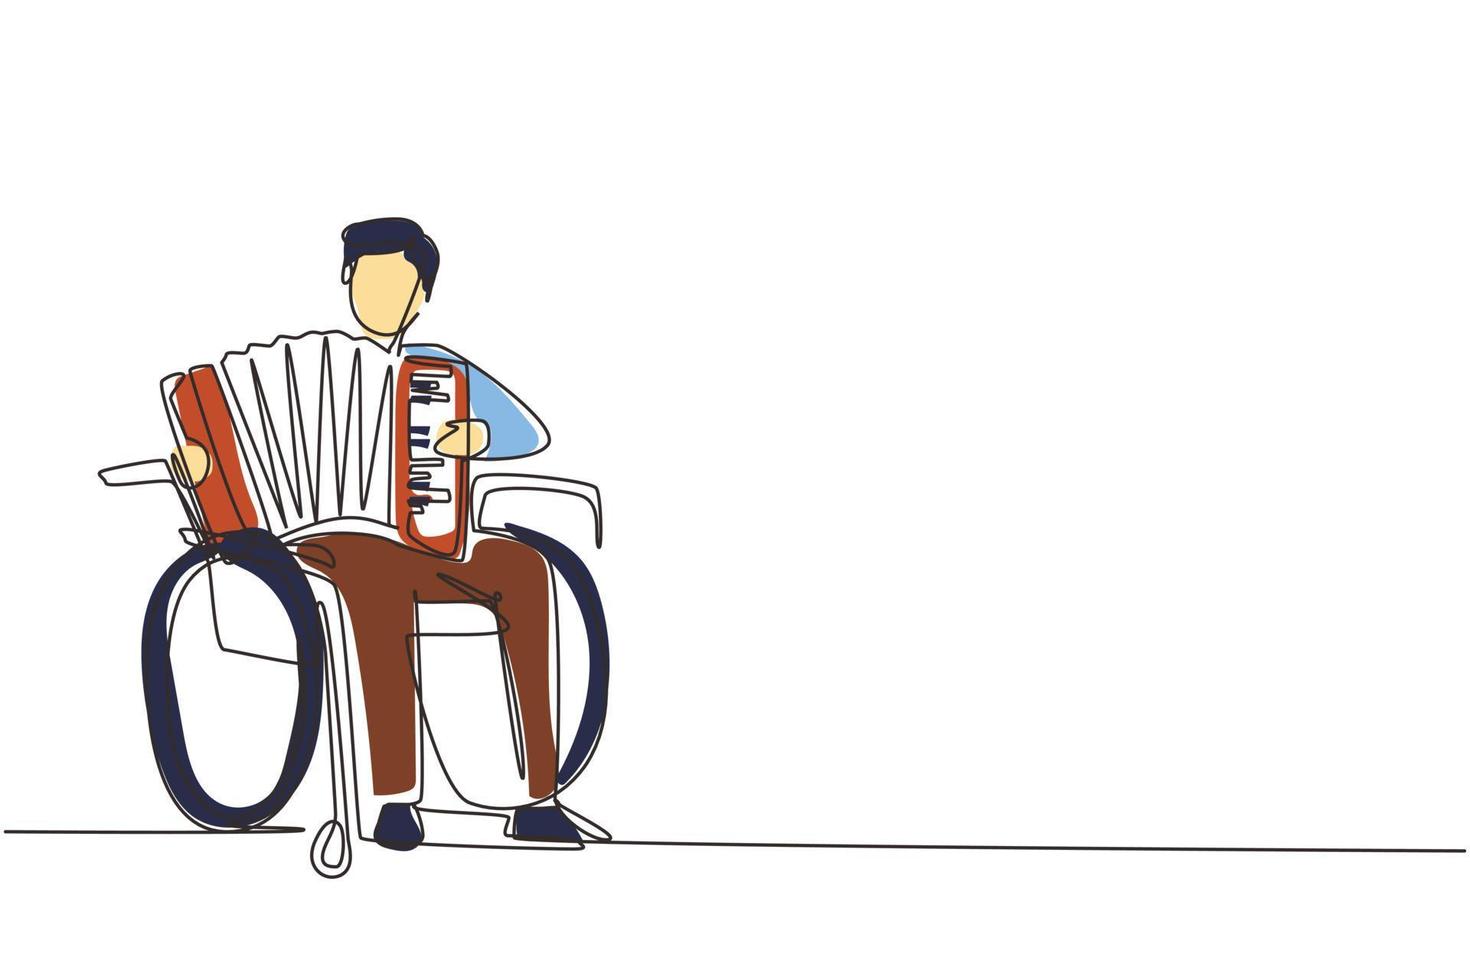 einzelne durchgehende Strichzeichnung behinderter gutaussehender Mann im Rollstuhl, der Akkordeonmusik spielt. körperlich behindert. Person im Krankenhaus. Patient des Rehabilitationszentrums. Designvektor mit einer Linie zeichnen vektor